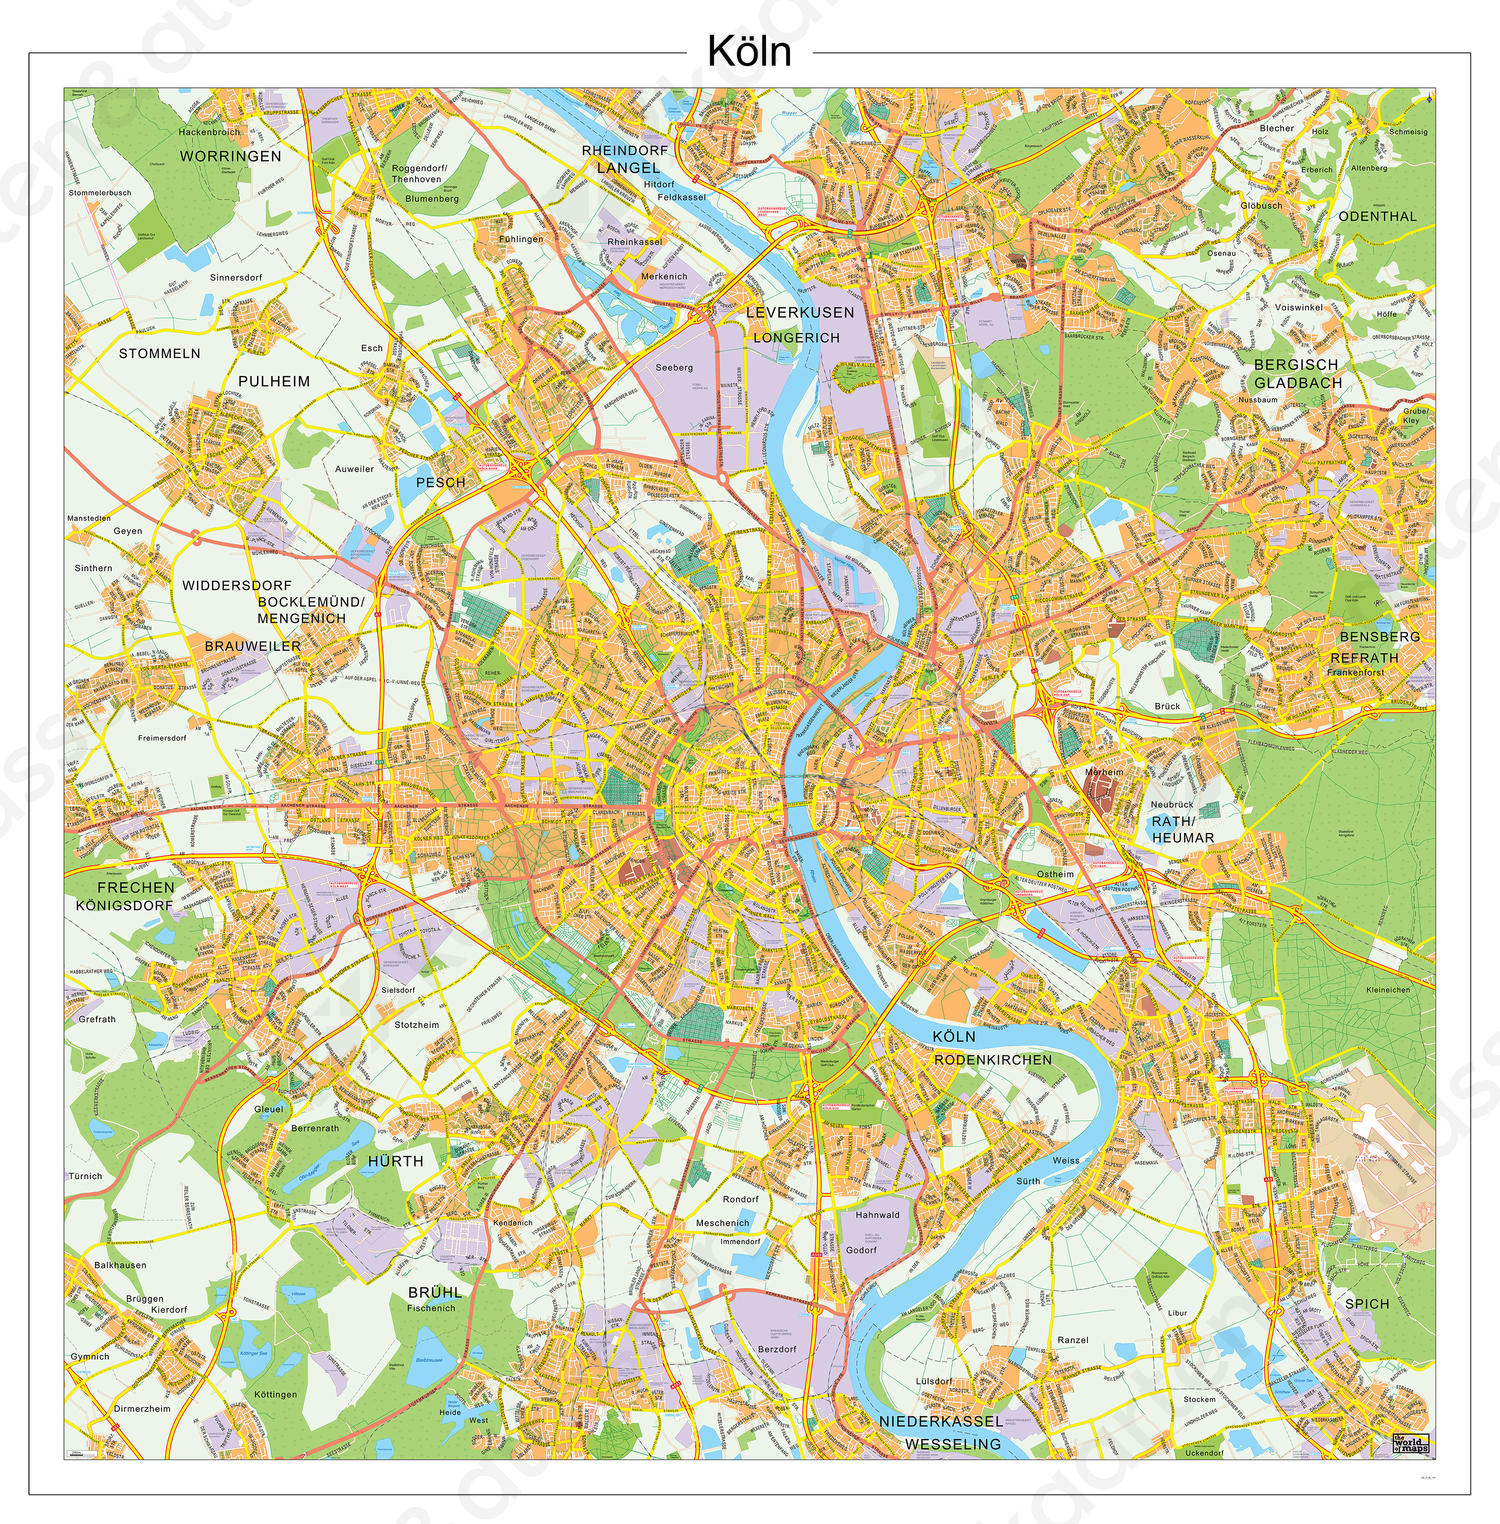 Digitale kaart Keulen / Köln 141